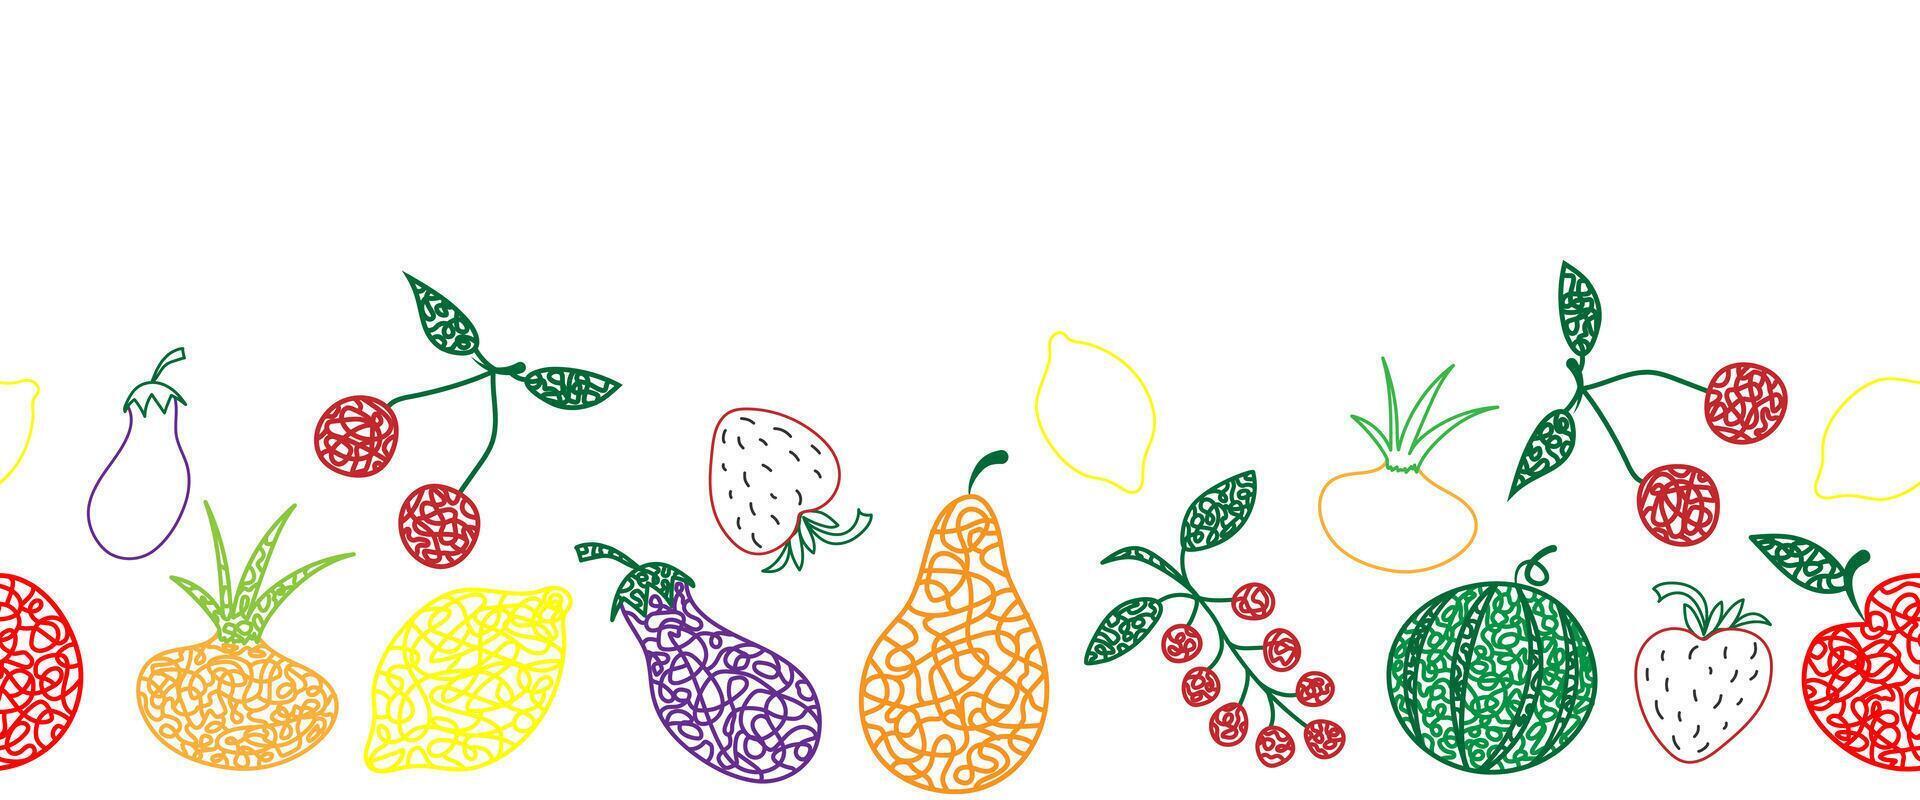 sömlös mönster gräns med hand dragen vattenmelon, körsbär, äpple, päron, citron, jordgubbe, äggplanta, vinbär, lök på vit bakgrund i barns naiv stil. vektor